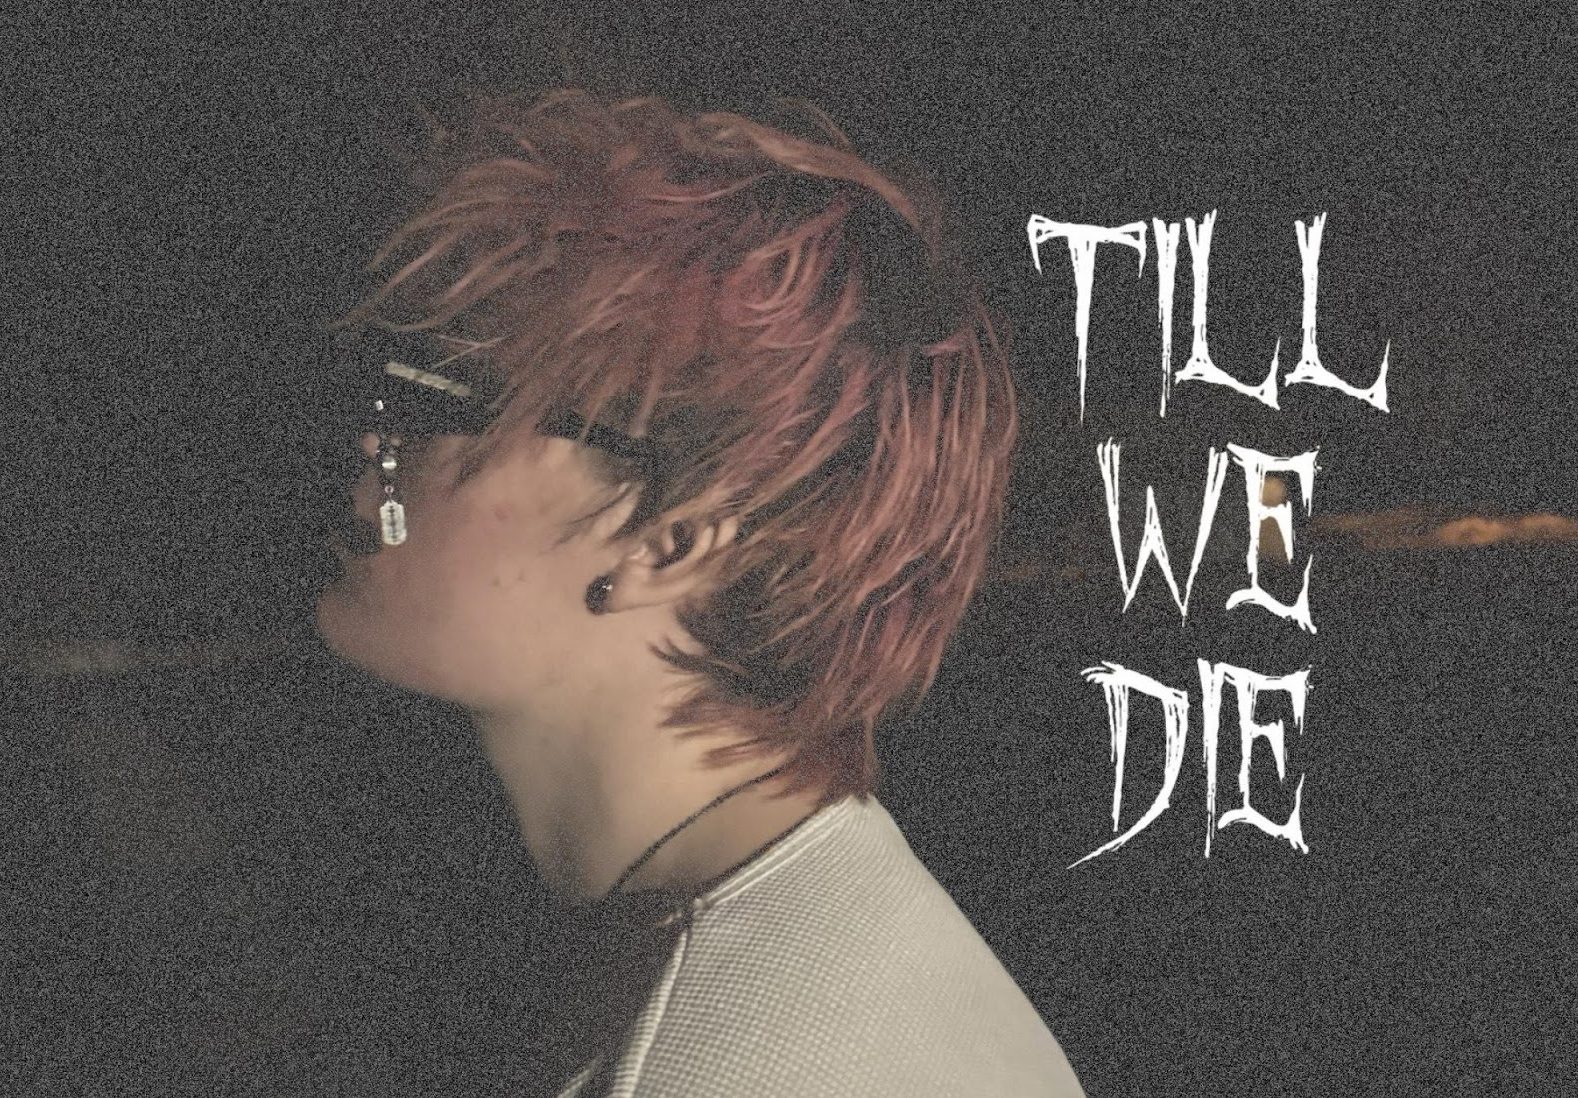 Punk Rapstar Dead Hendrix Drops New Single, “Till We Die”